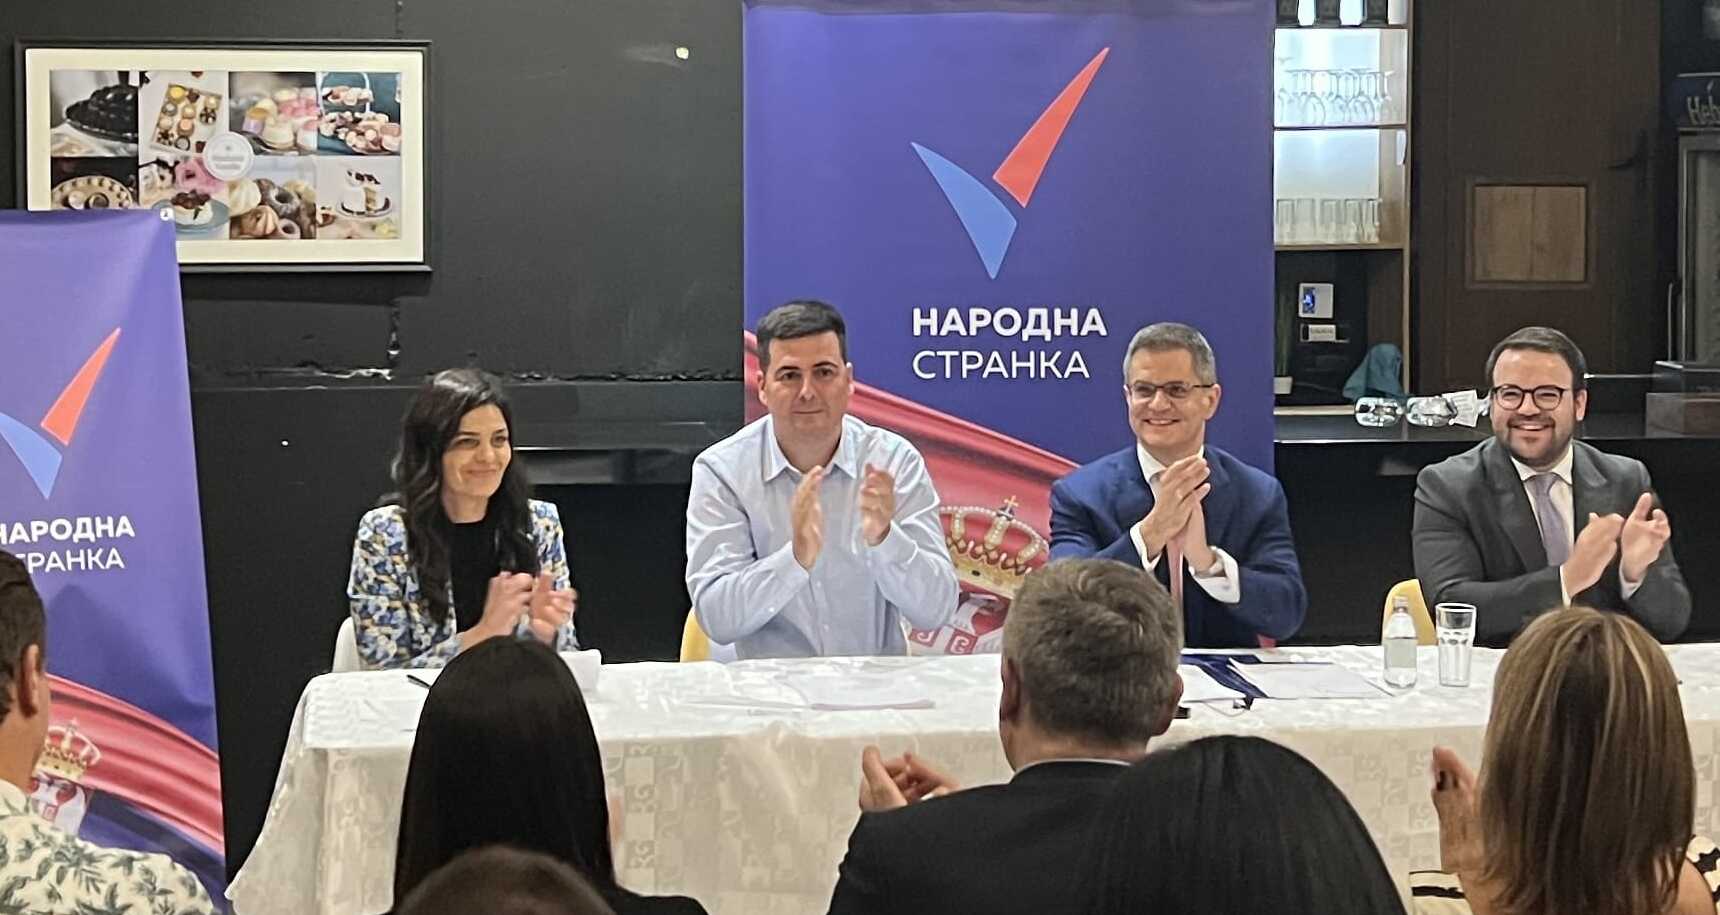 Београд: Општински одбор Народне странке Врачар изабрао делегате за страначку скупштину